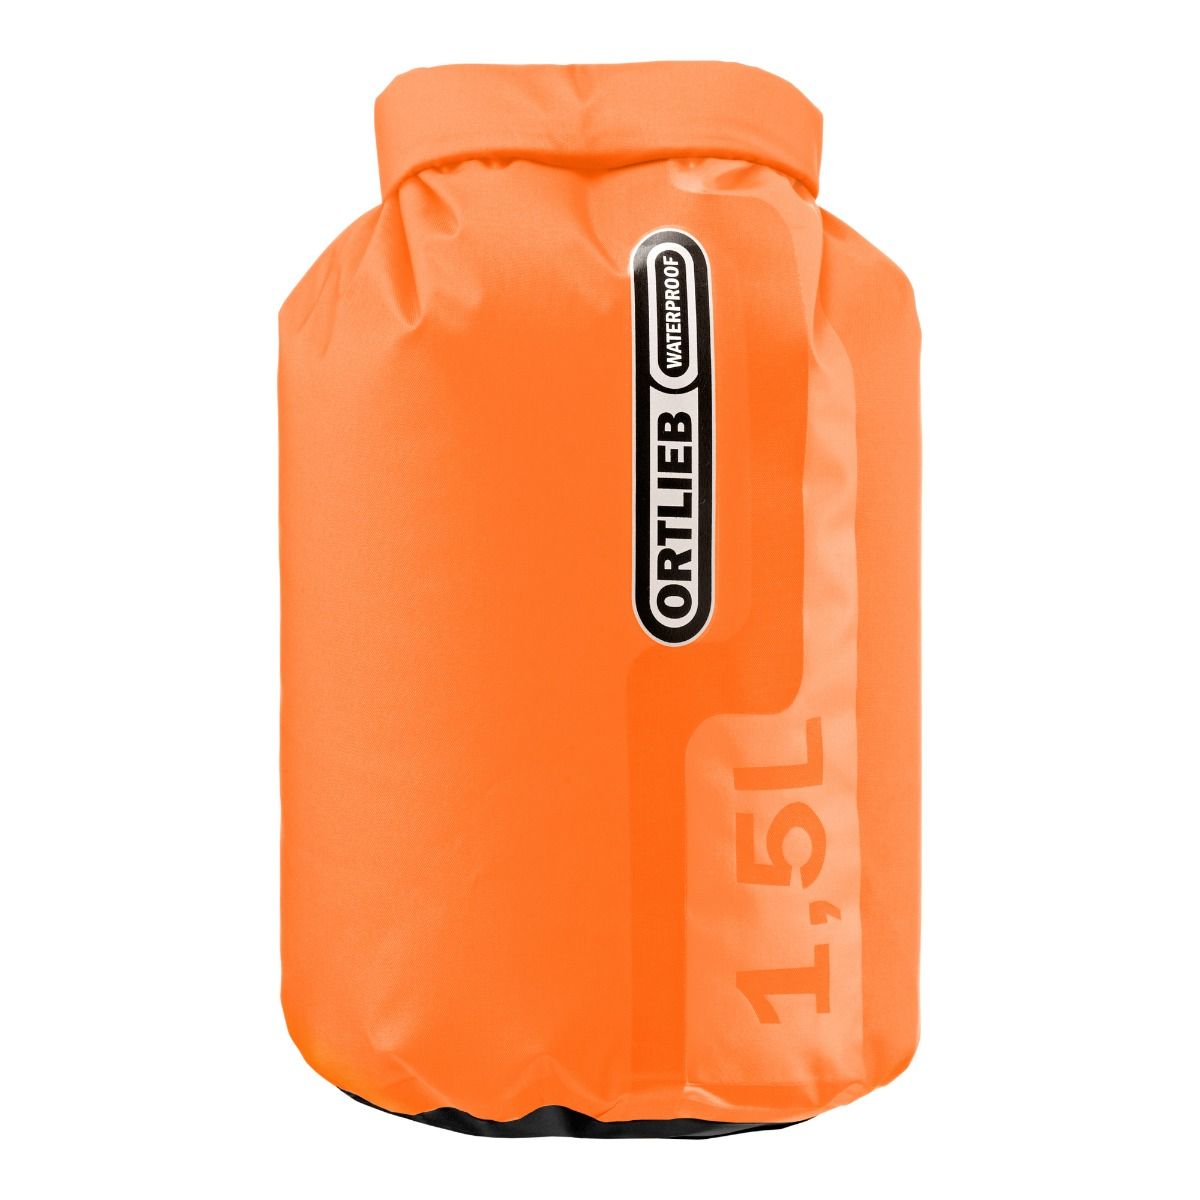 Immagine prodotto da ORTLIEB Dry-Bag PS10 - 1.5L Sacco a Pelo Impermeabile - arancione